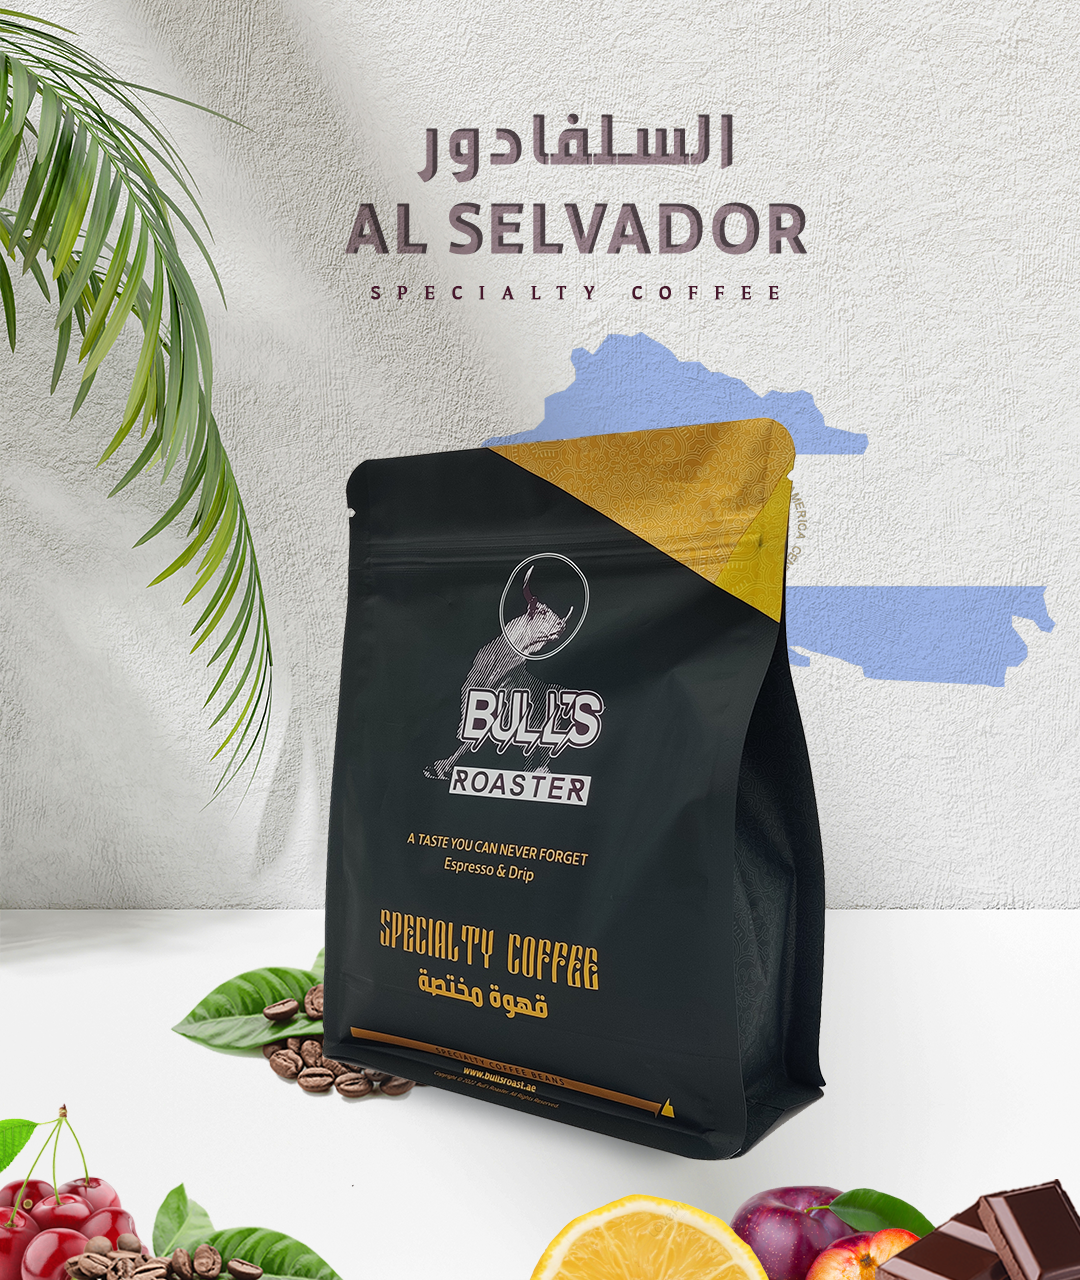 Salvador specialty coffee